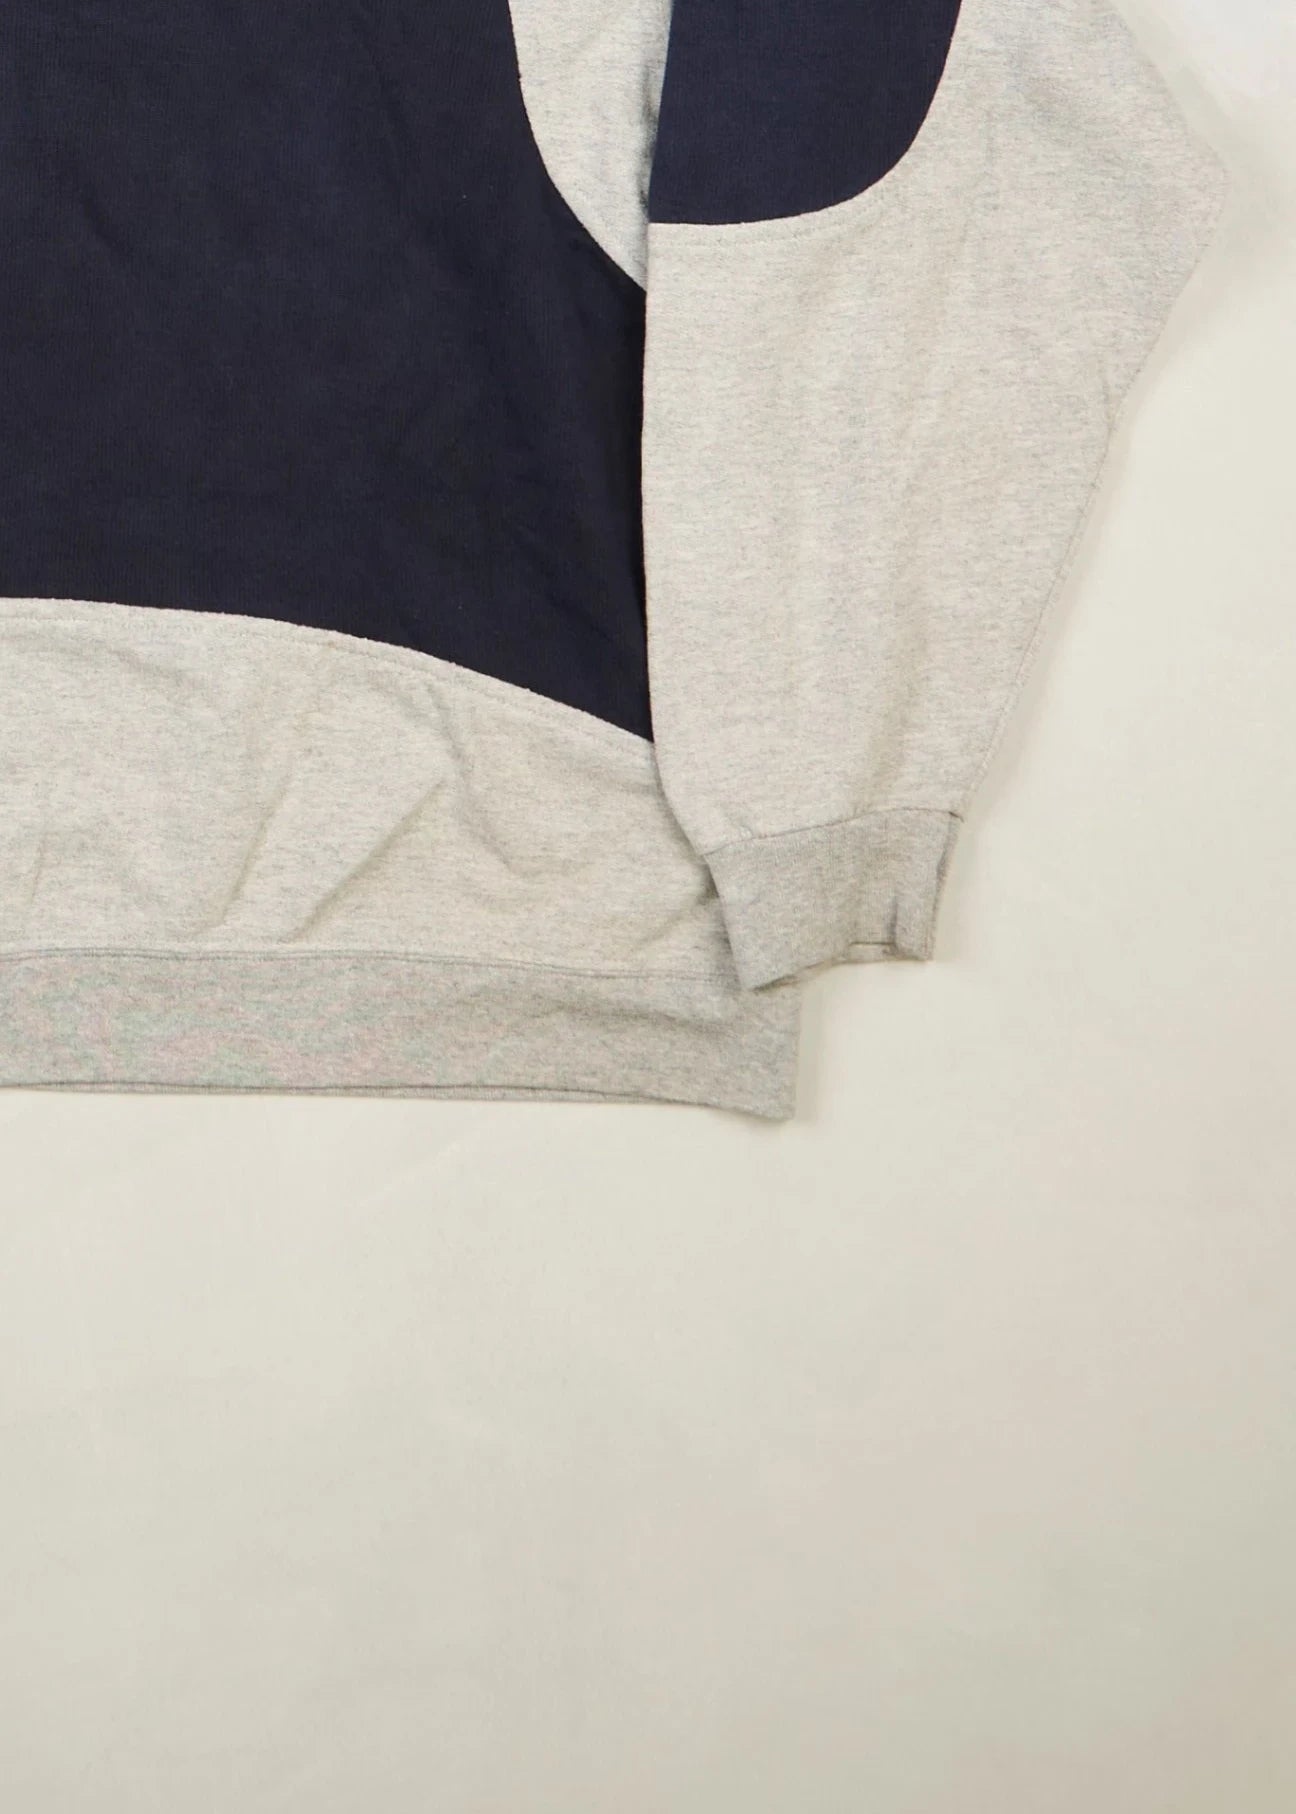 Ralph Lauren - Sweater (XXL) Bottom Right